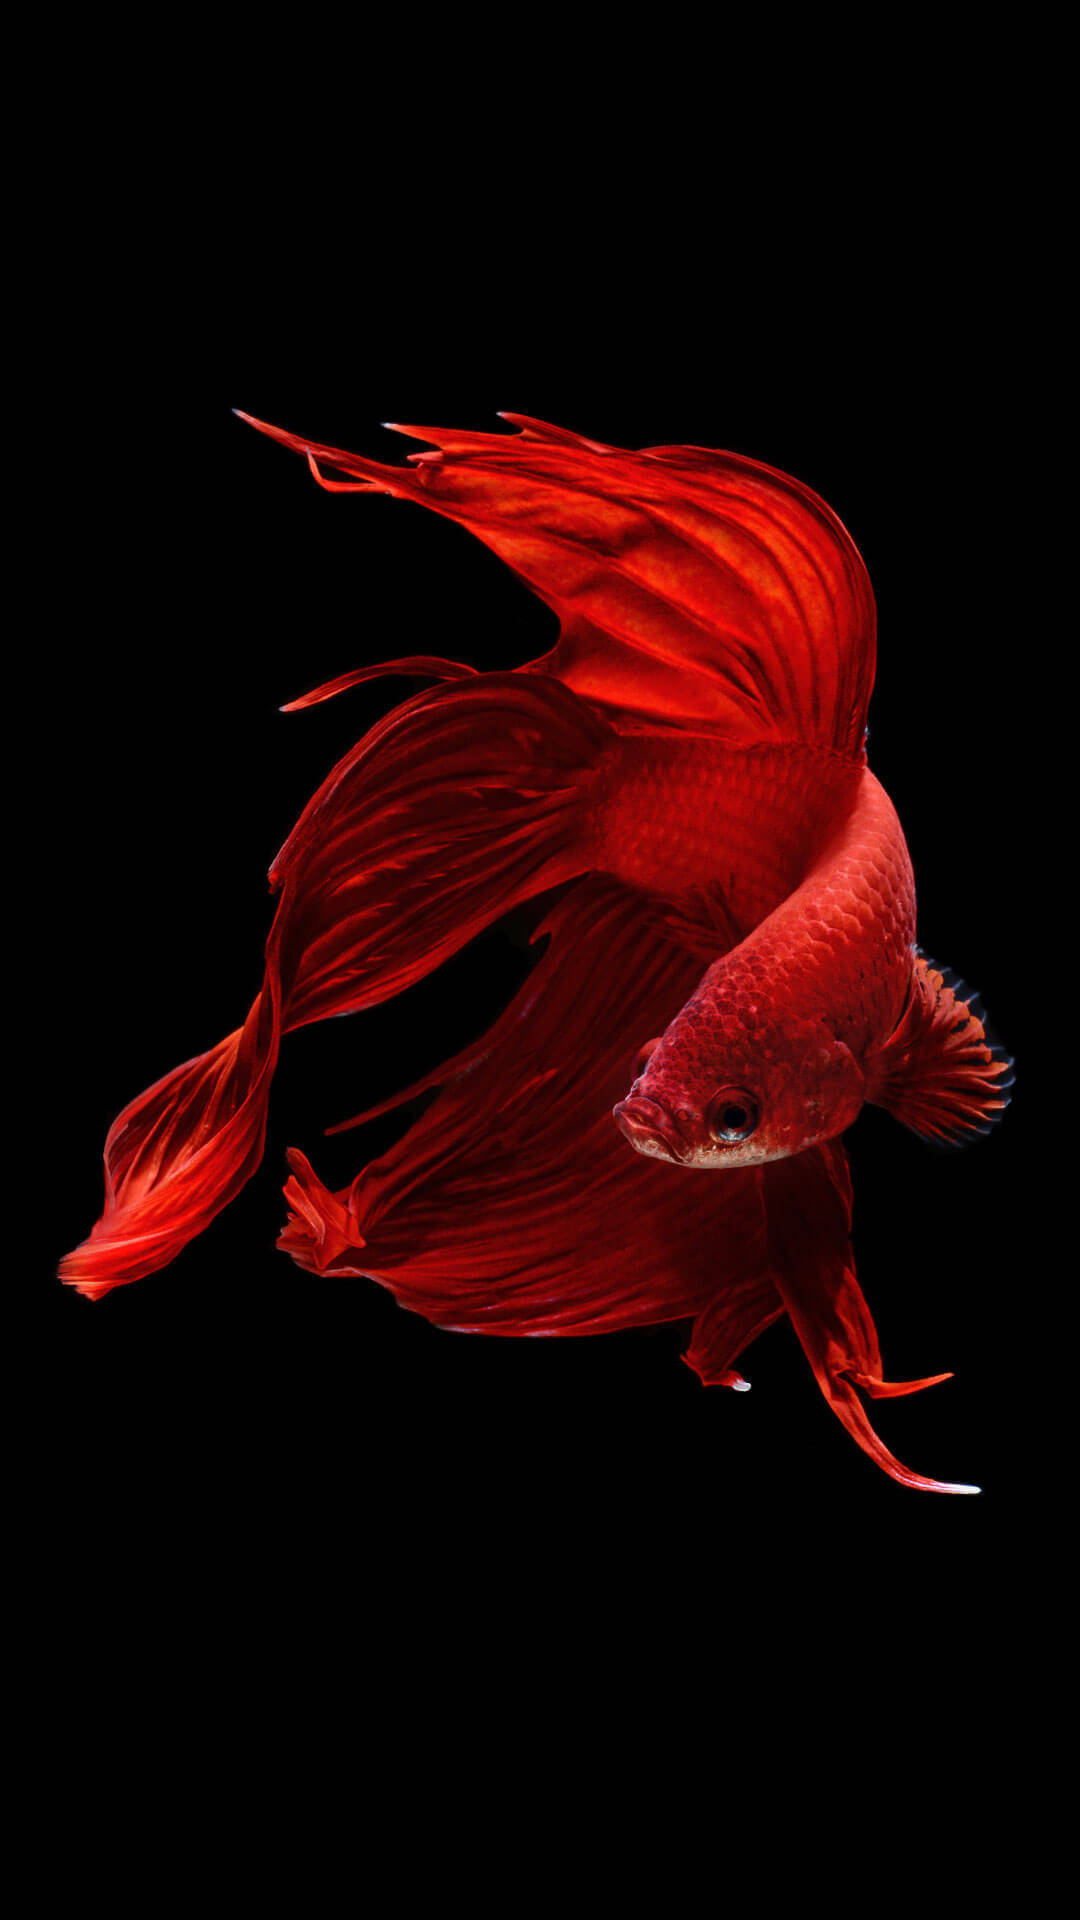 A Red Fish Swimming in a Glistening Sea Wallpaper